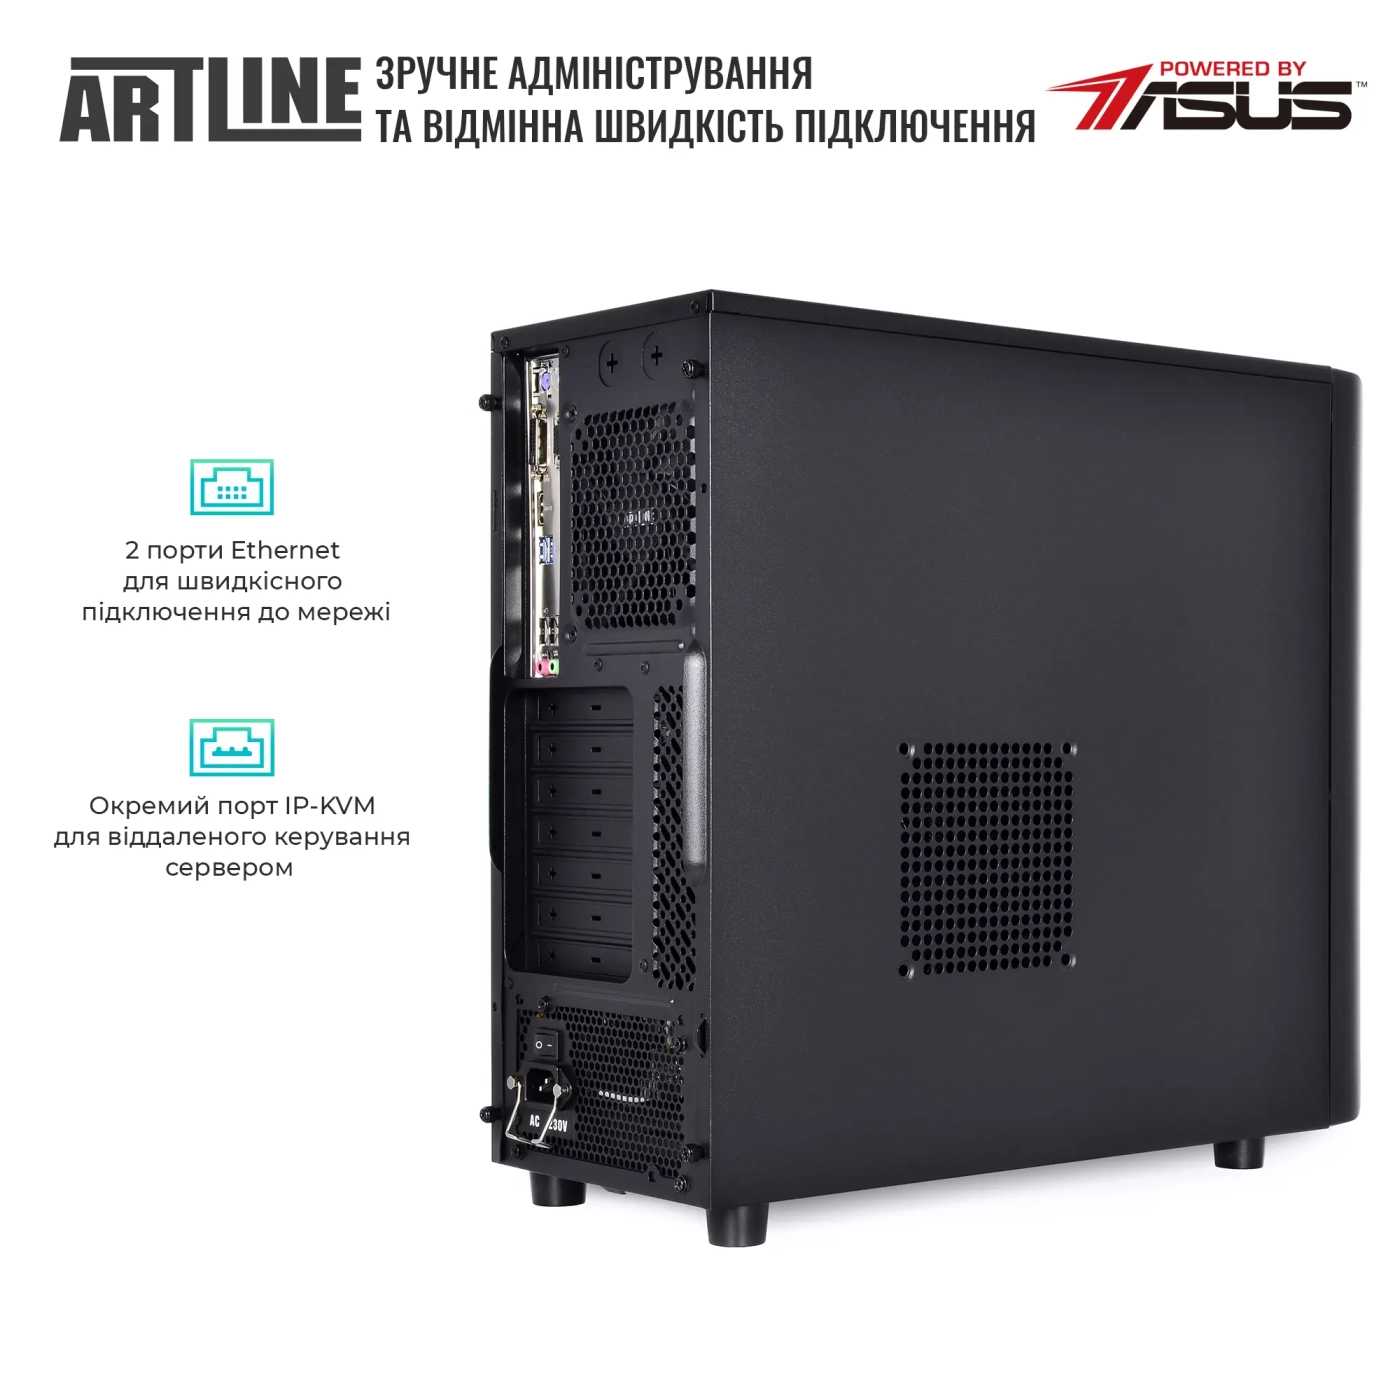 Купить Сервер ARTLINE Business T37v18 - фото 5